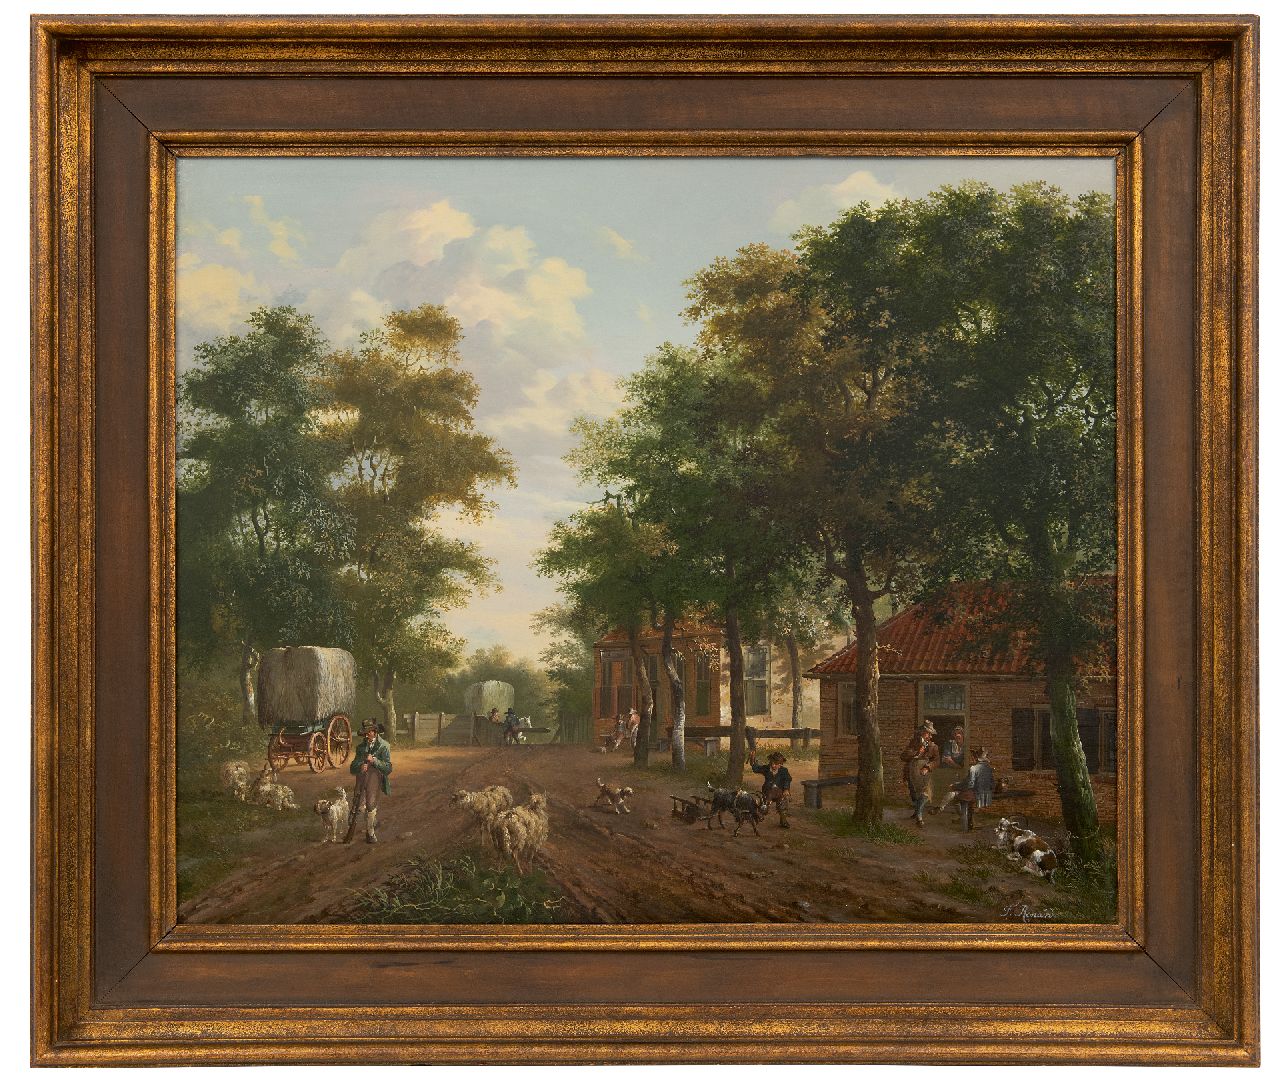 Renard F.T.  | Fredericus Theodorus Renard | Schilderijen te koop aangeboden | Landelijke bedrijvigheid in een dorp, olieverf op paneel 52,1 x 63,4 cm, gesigneerd rechtsonder